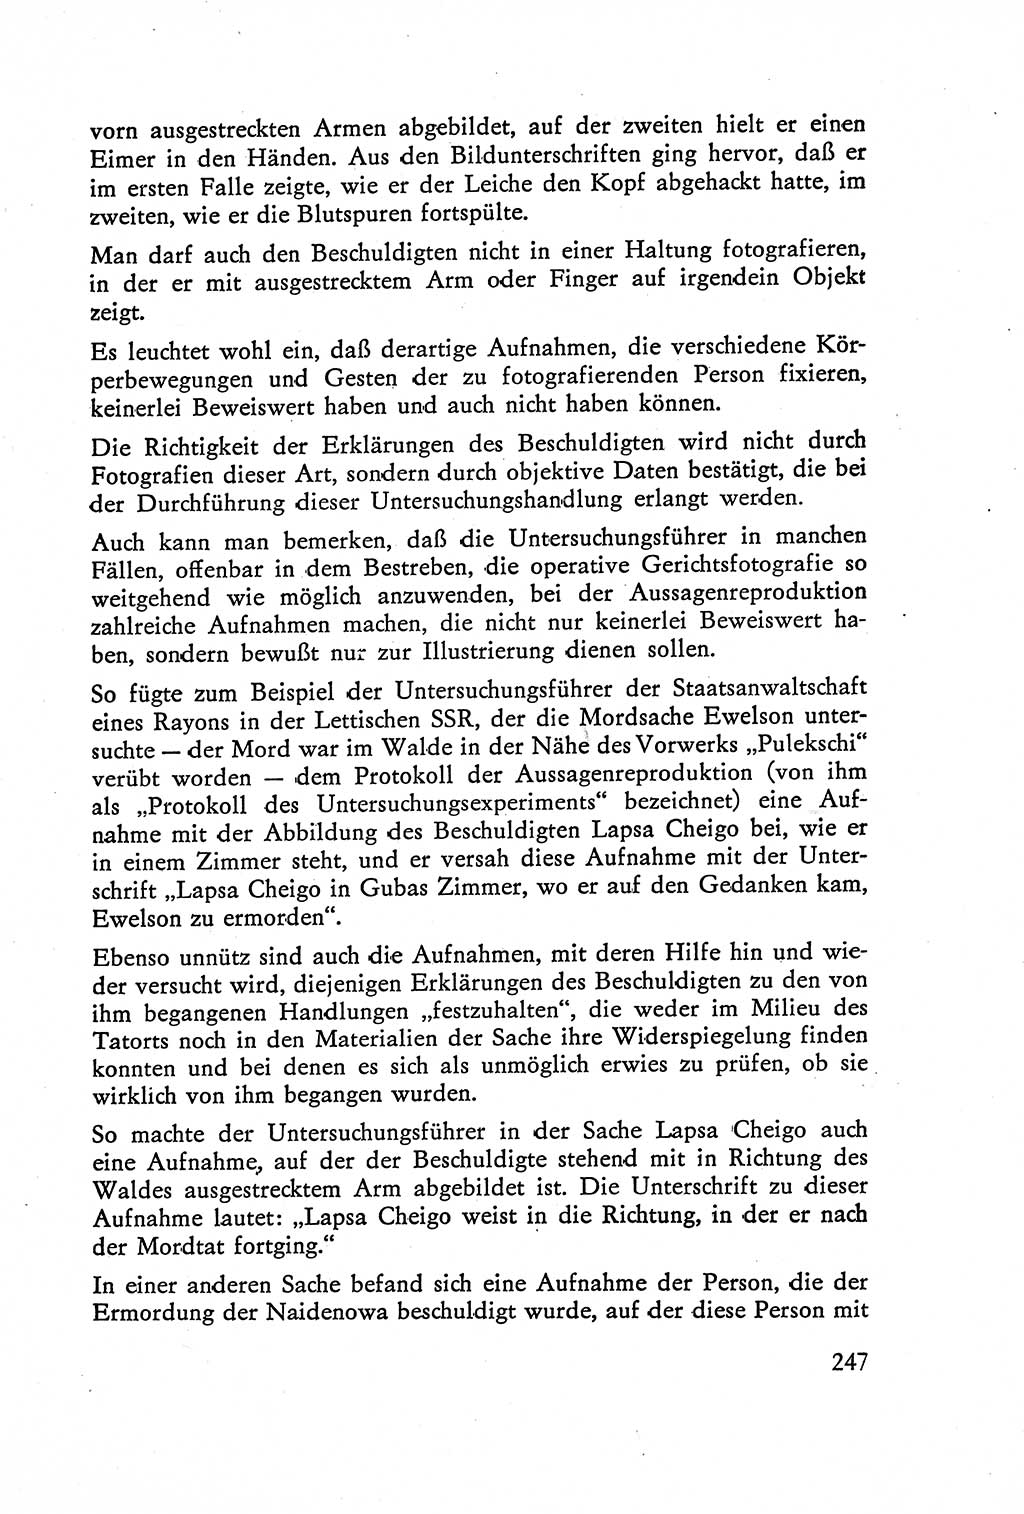 Die Vernehmung [Deutsche Demokratische Republik (DDR)] 1960, Seite 247 (Vern. DDR 1960, S. 247)